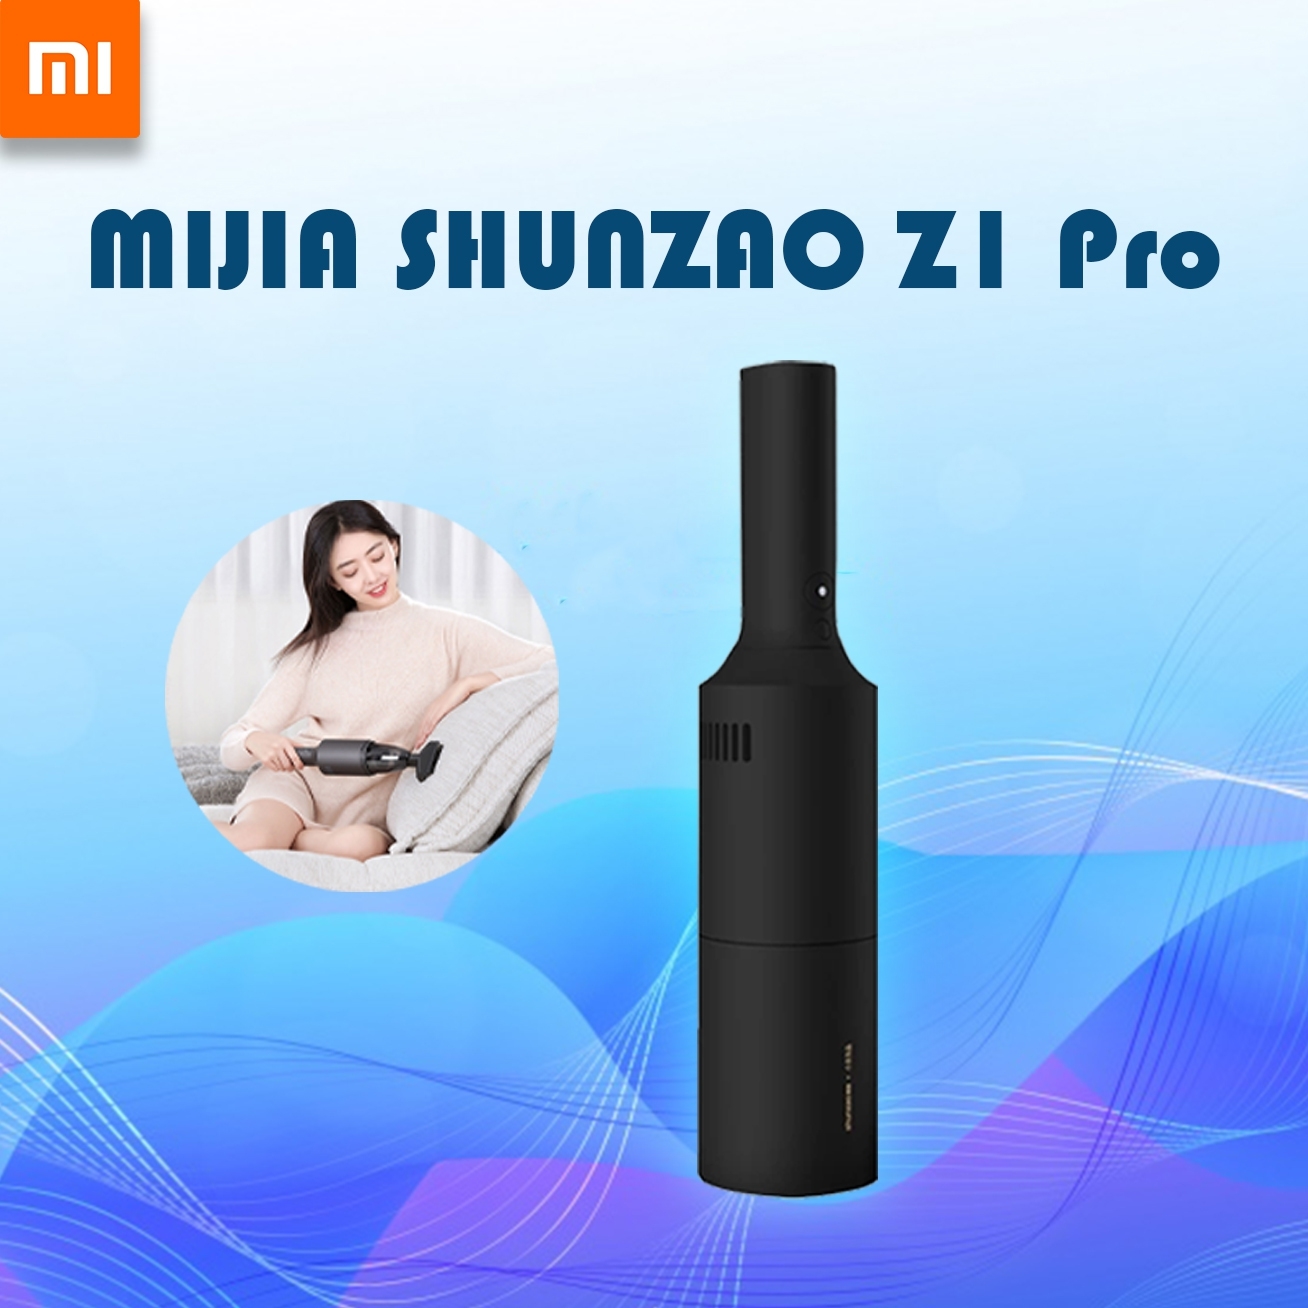 Xiaomi Youpin MIJIA SHUNZAO Z1 Pro - เครื่องดูดฝุ่นพกพา รุ่น Z1 Pro เครื่องดูดฝุ่นไร้สายยานยนต์ ขนาดพกพา สายชาร์จ USB สะดวกต่อการใช้งาน แรงการดูด 15500PA